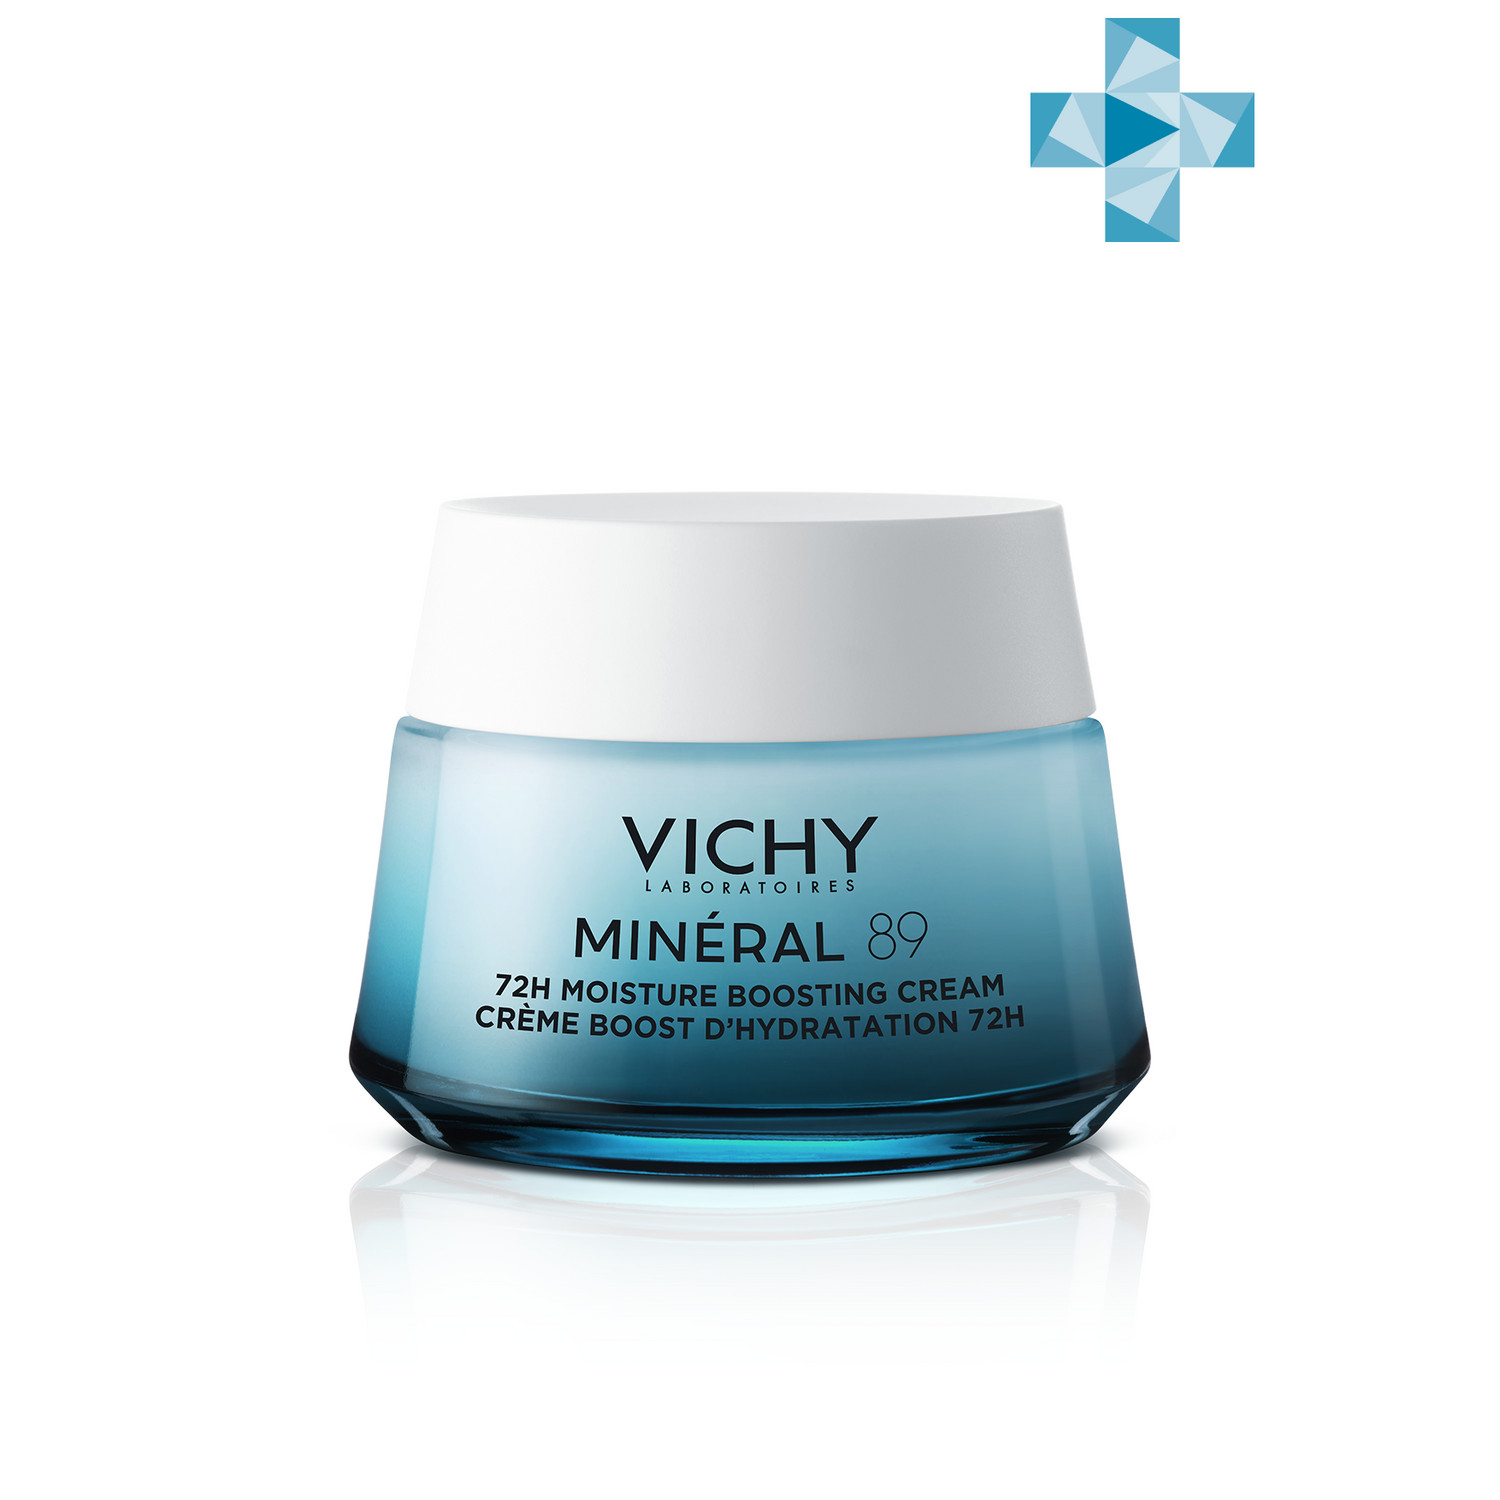 Vichy Интенсивно увлажняющий крем 72ч для всех типов кожи, 50 мл (Vichy, Mineral 89) кора комплект крем увлажняющий с морскими экстрактами на основе термальной воды 2х50 мл кора увлажнение кожи